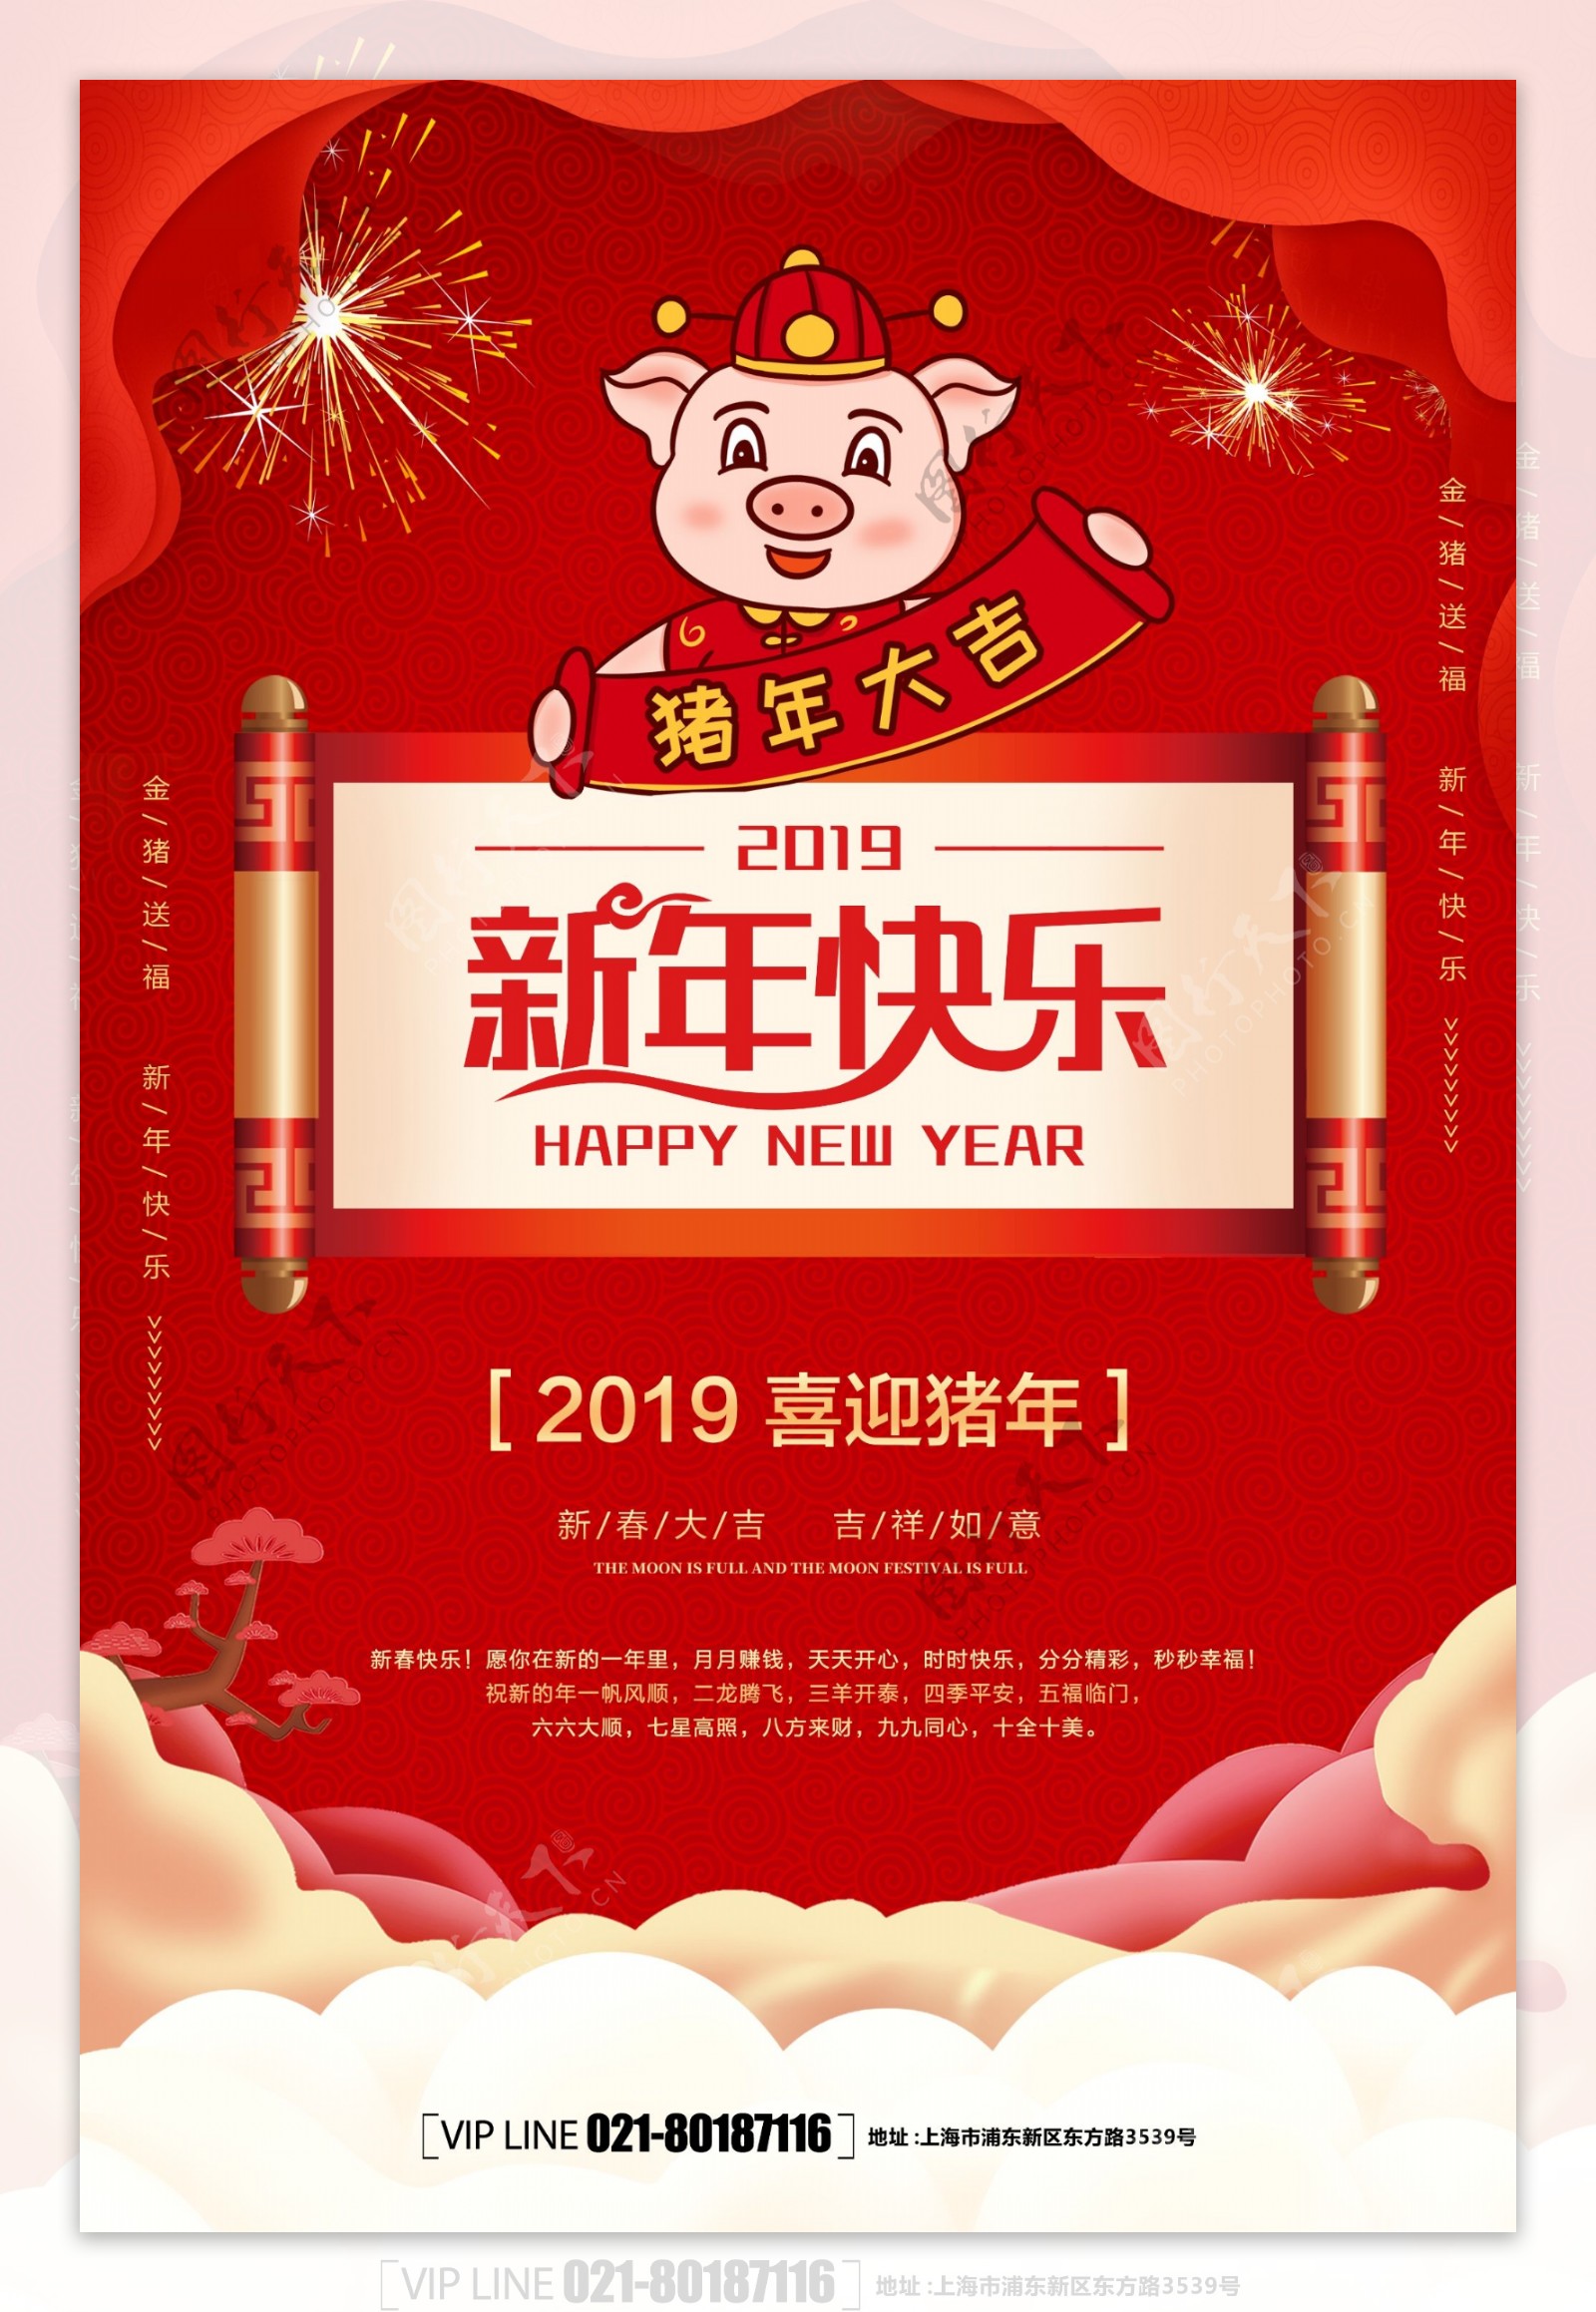 大红喜庆猪年新年快乐海报